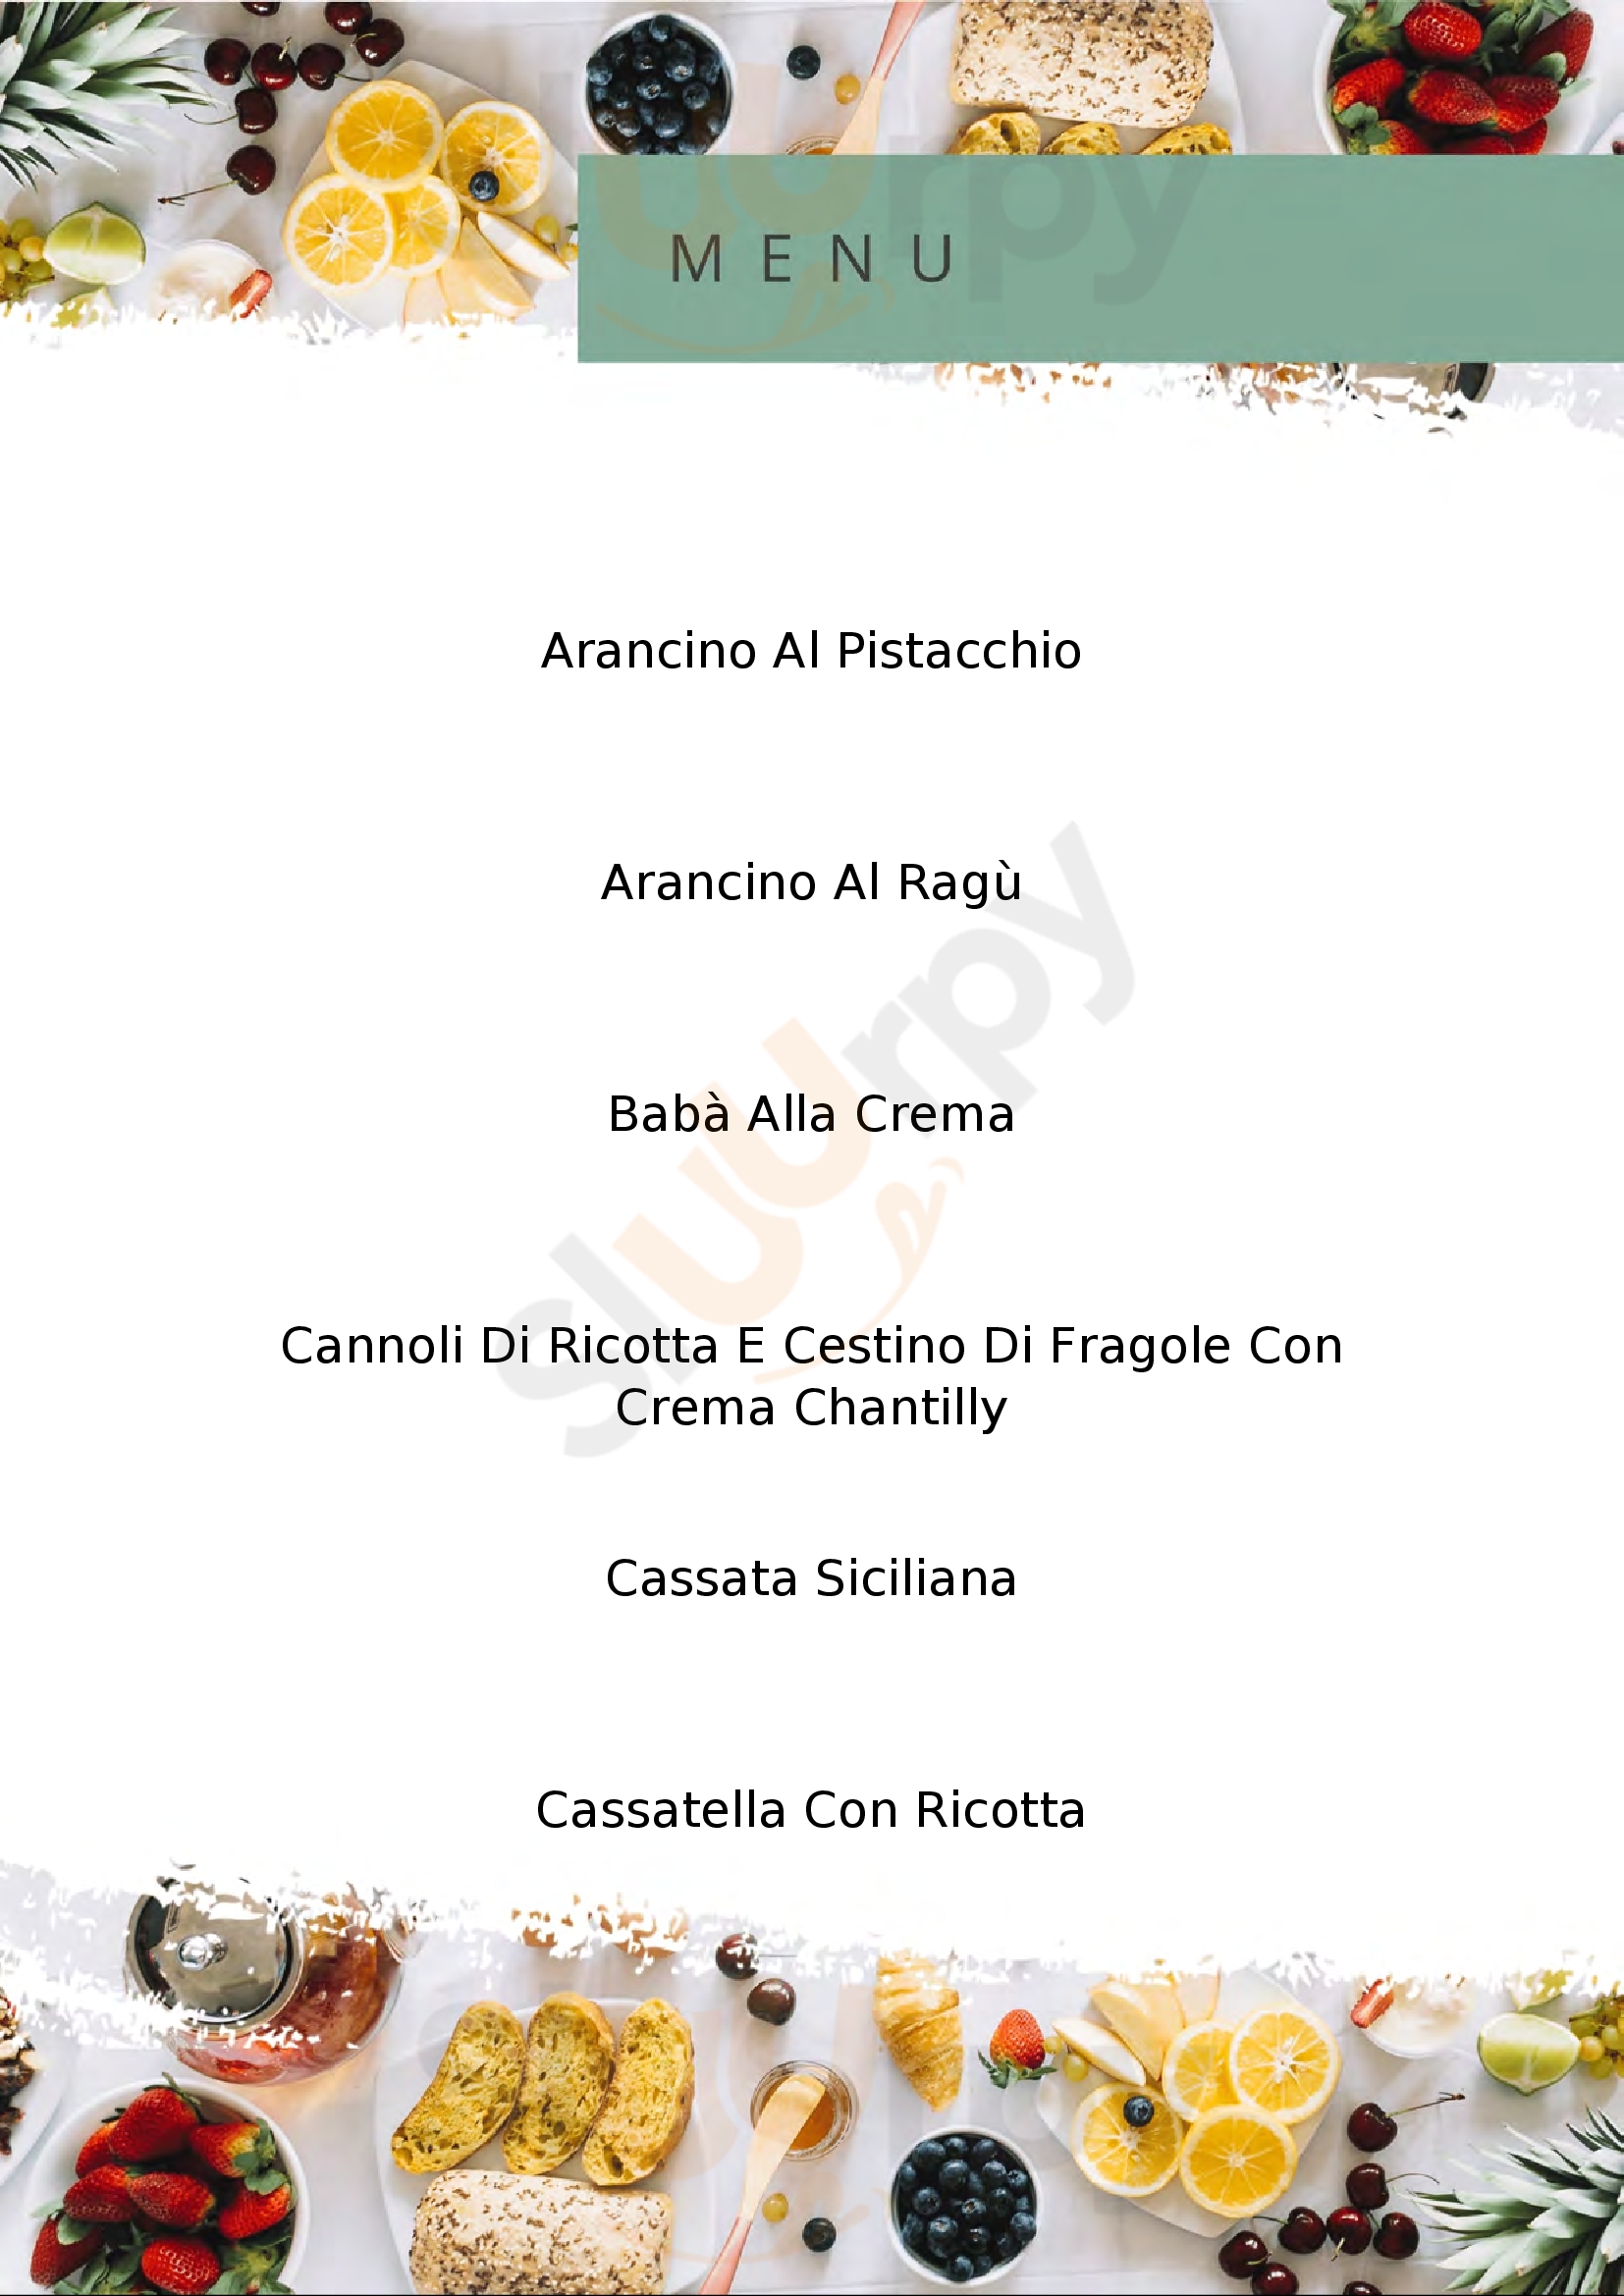 Pasticceria Spinella Catania menù 1 pagina